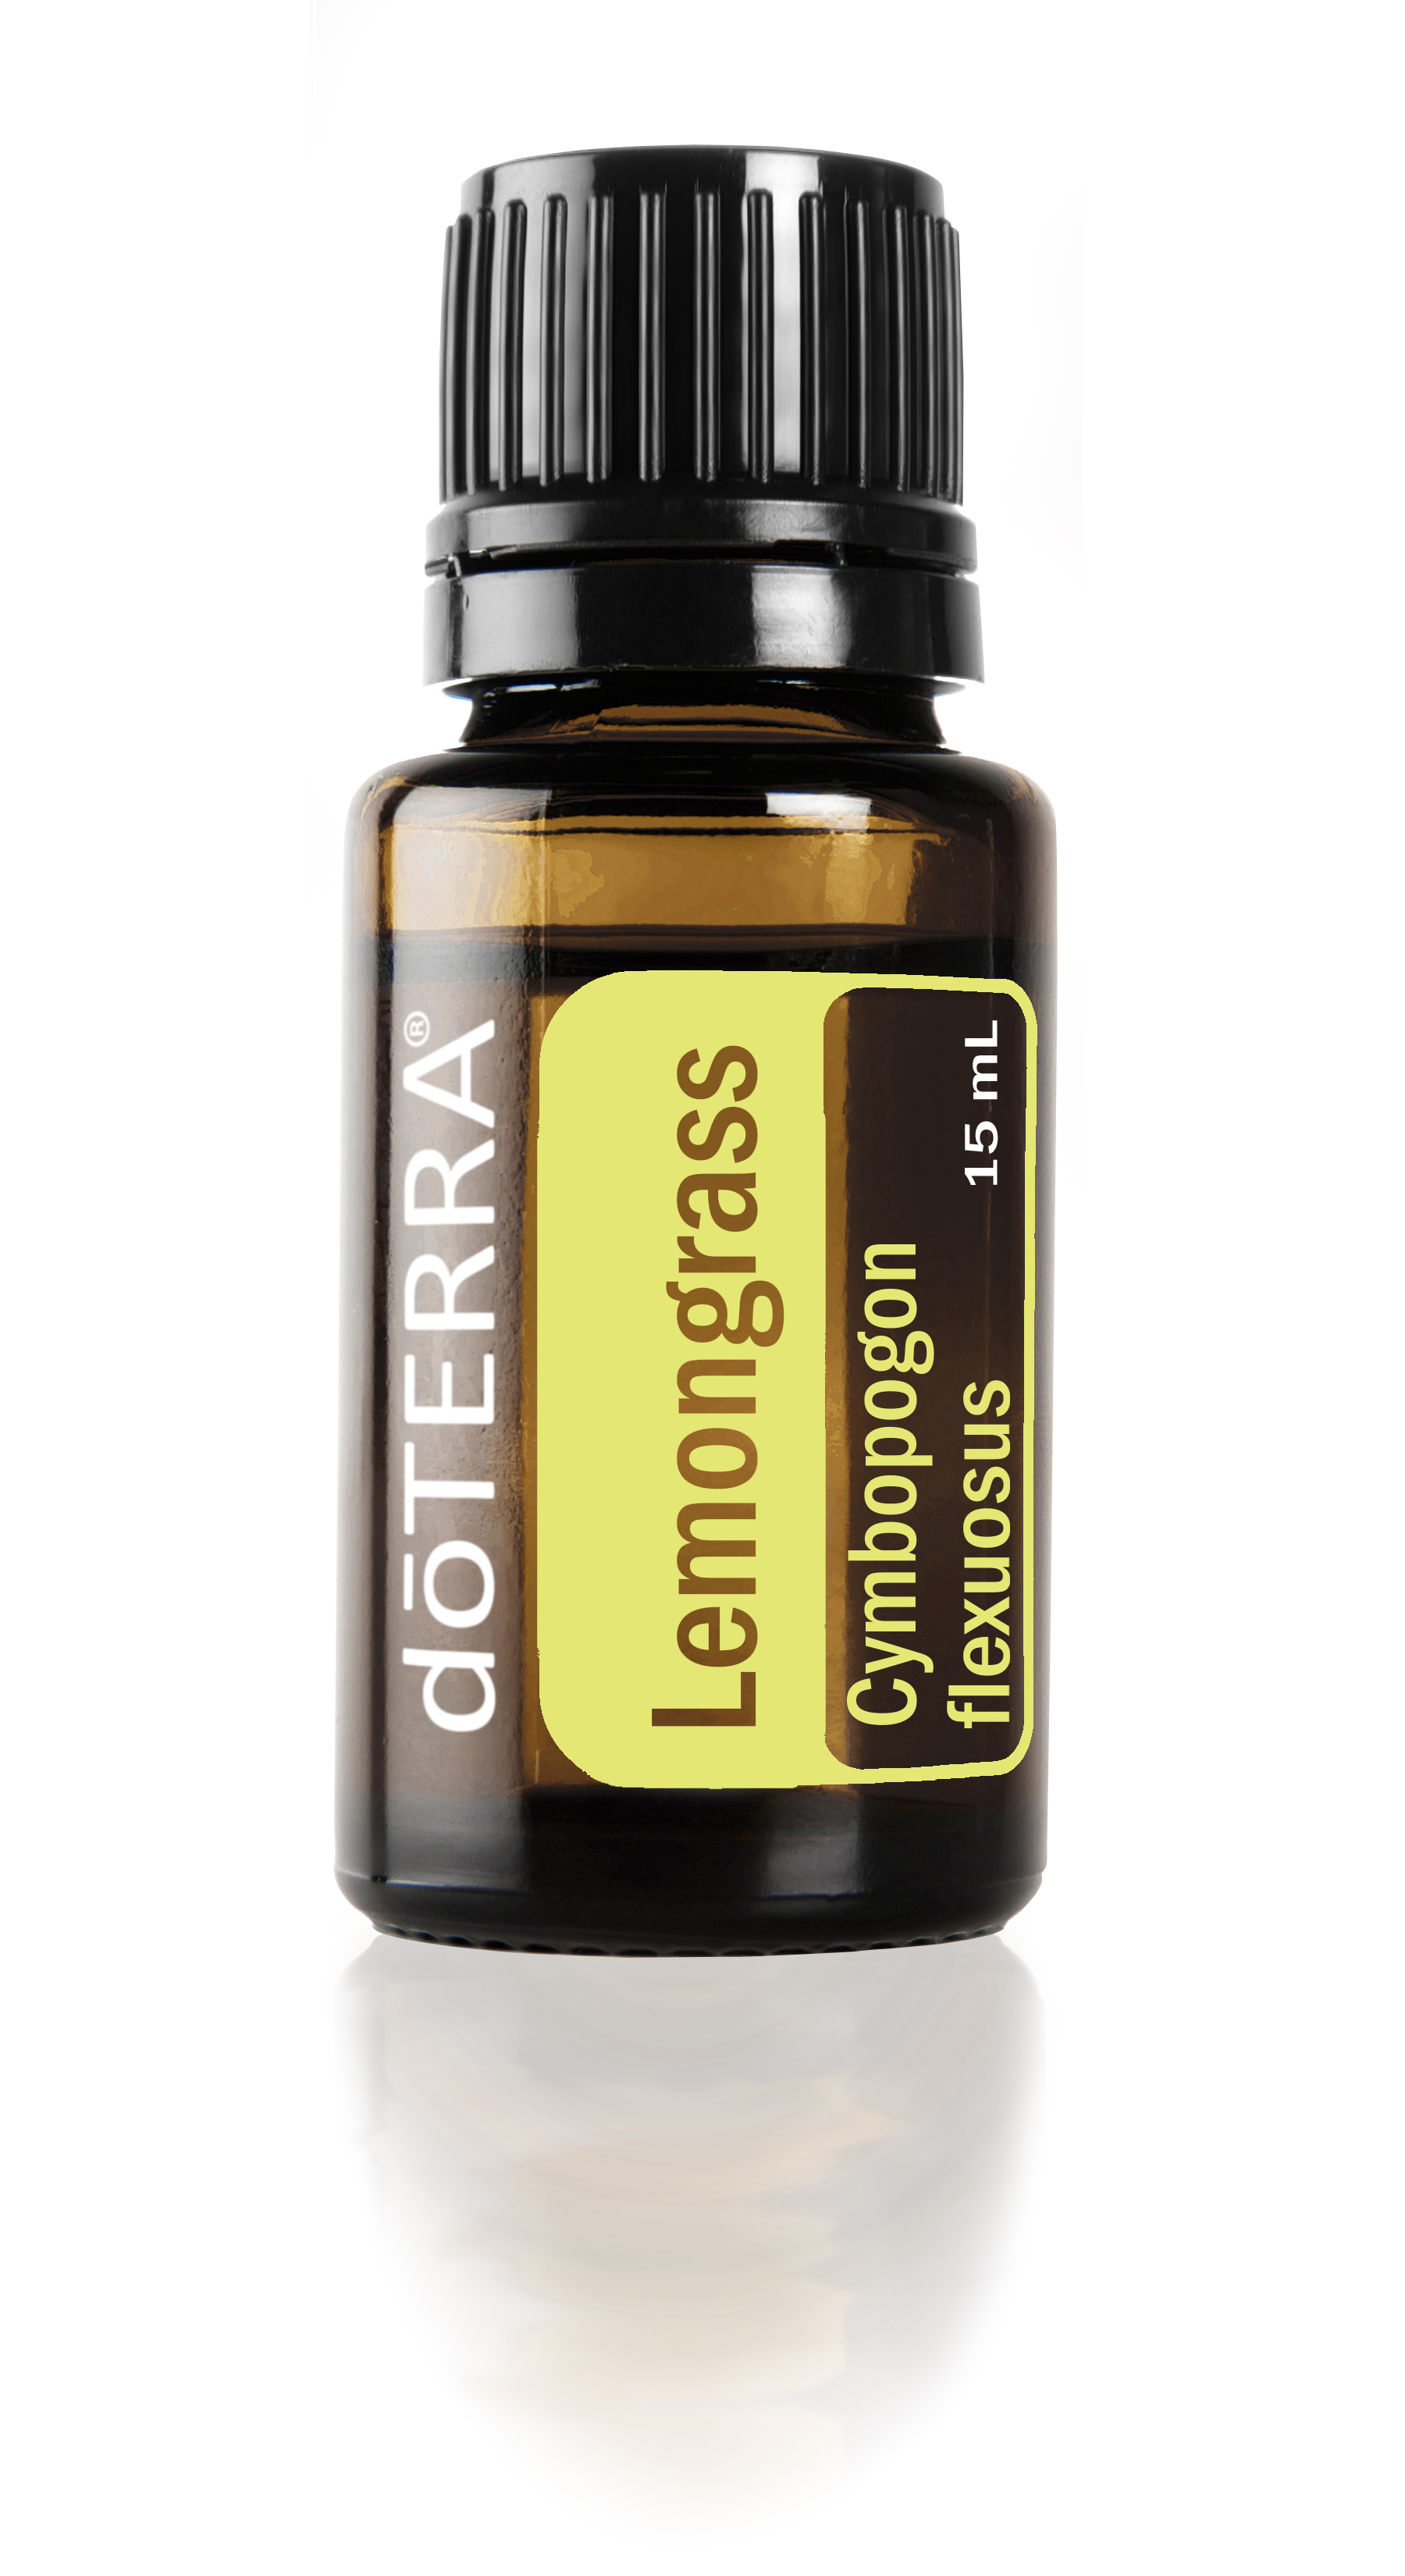 Lemongrass Oil & Lemongrass, Essential Oils